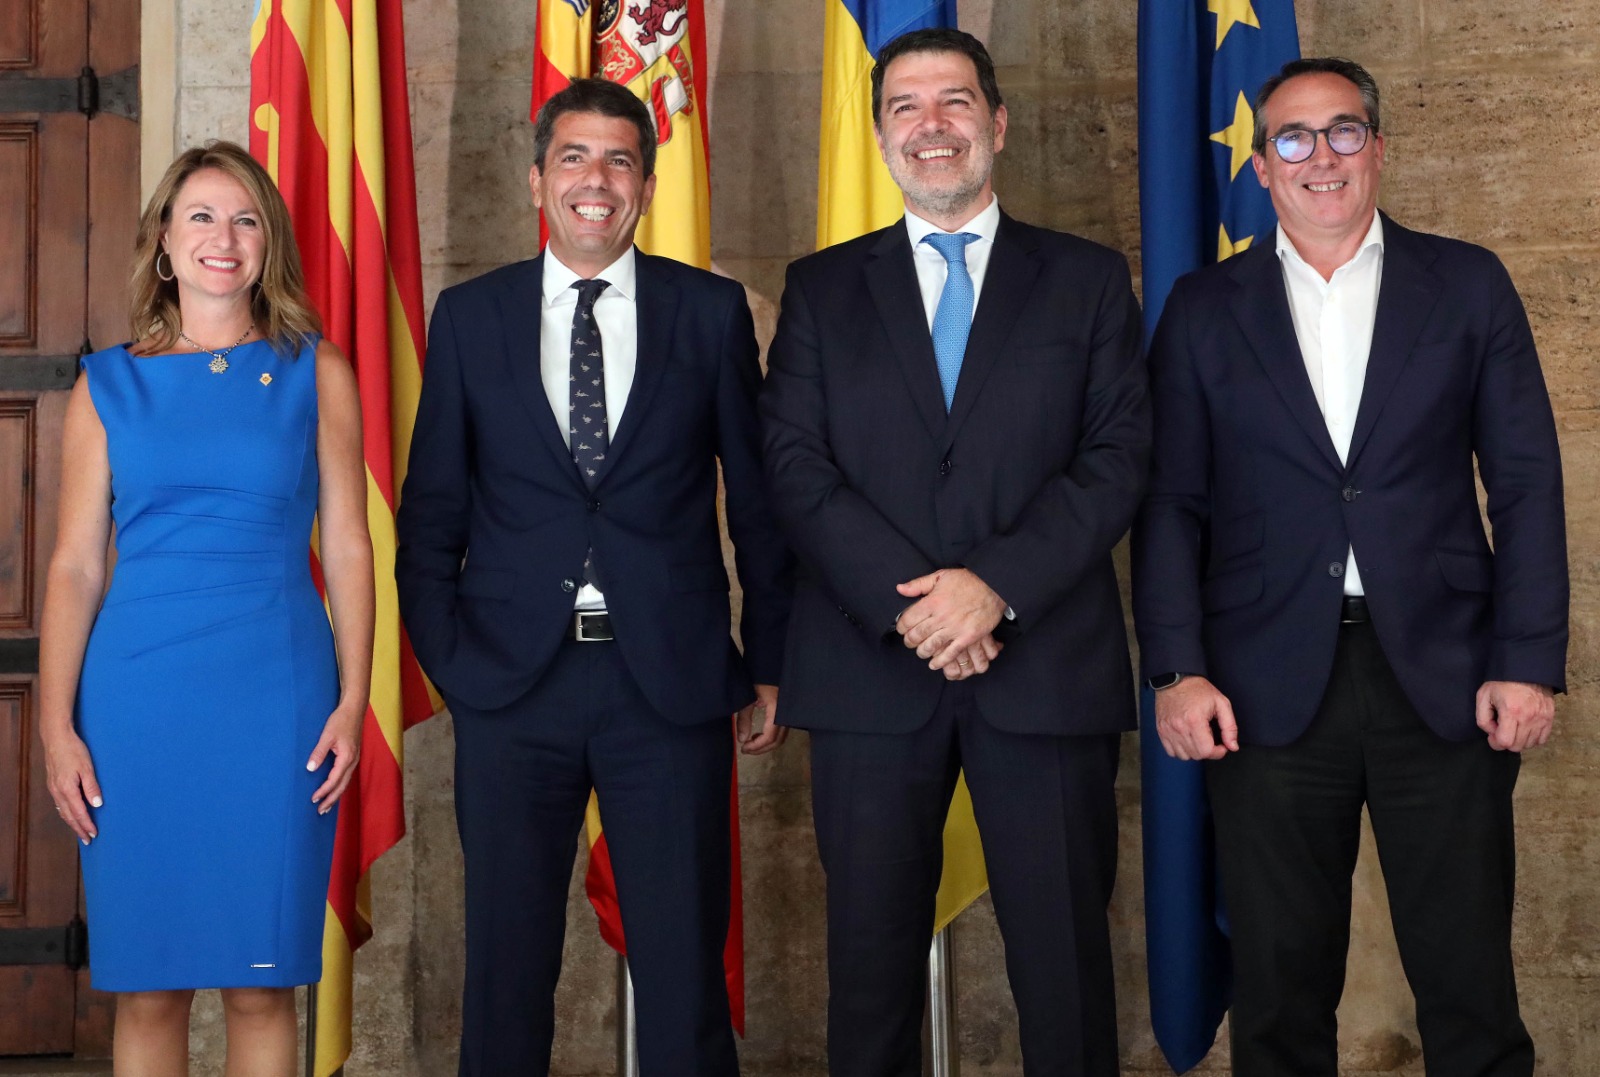 Carrasco: “Hui fem un pas més en la nostra aposta per fer de Castelló un destí inversor que genere noves oportunitats i ocupació estable i de qualitat a la nostra ciutat”